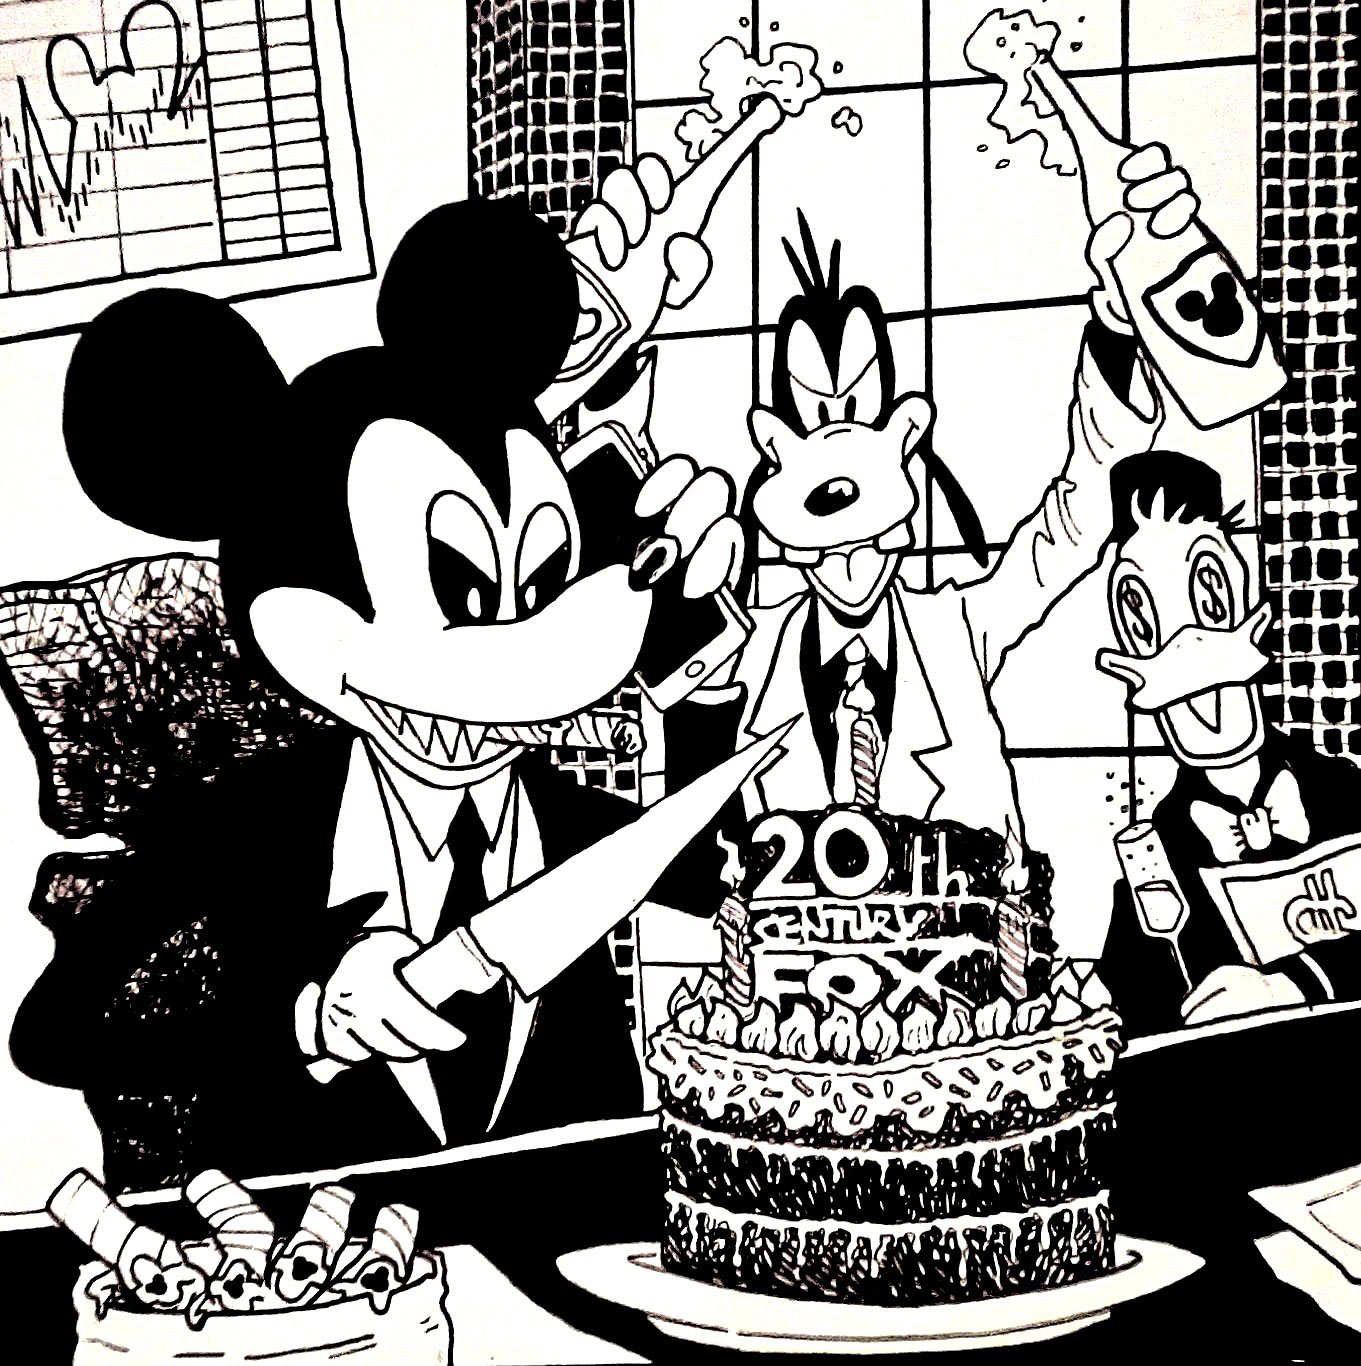 Illustration de Su zo sur le rachat de la fox par le Disney de Mickey Mouse